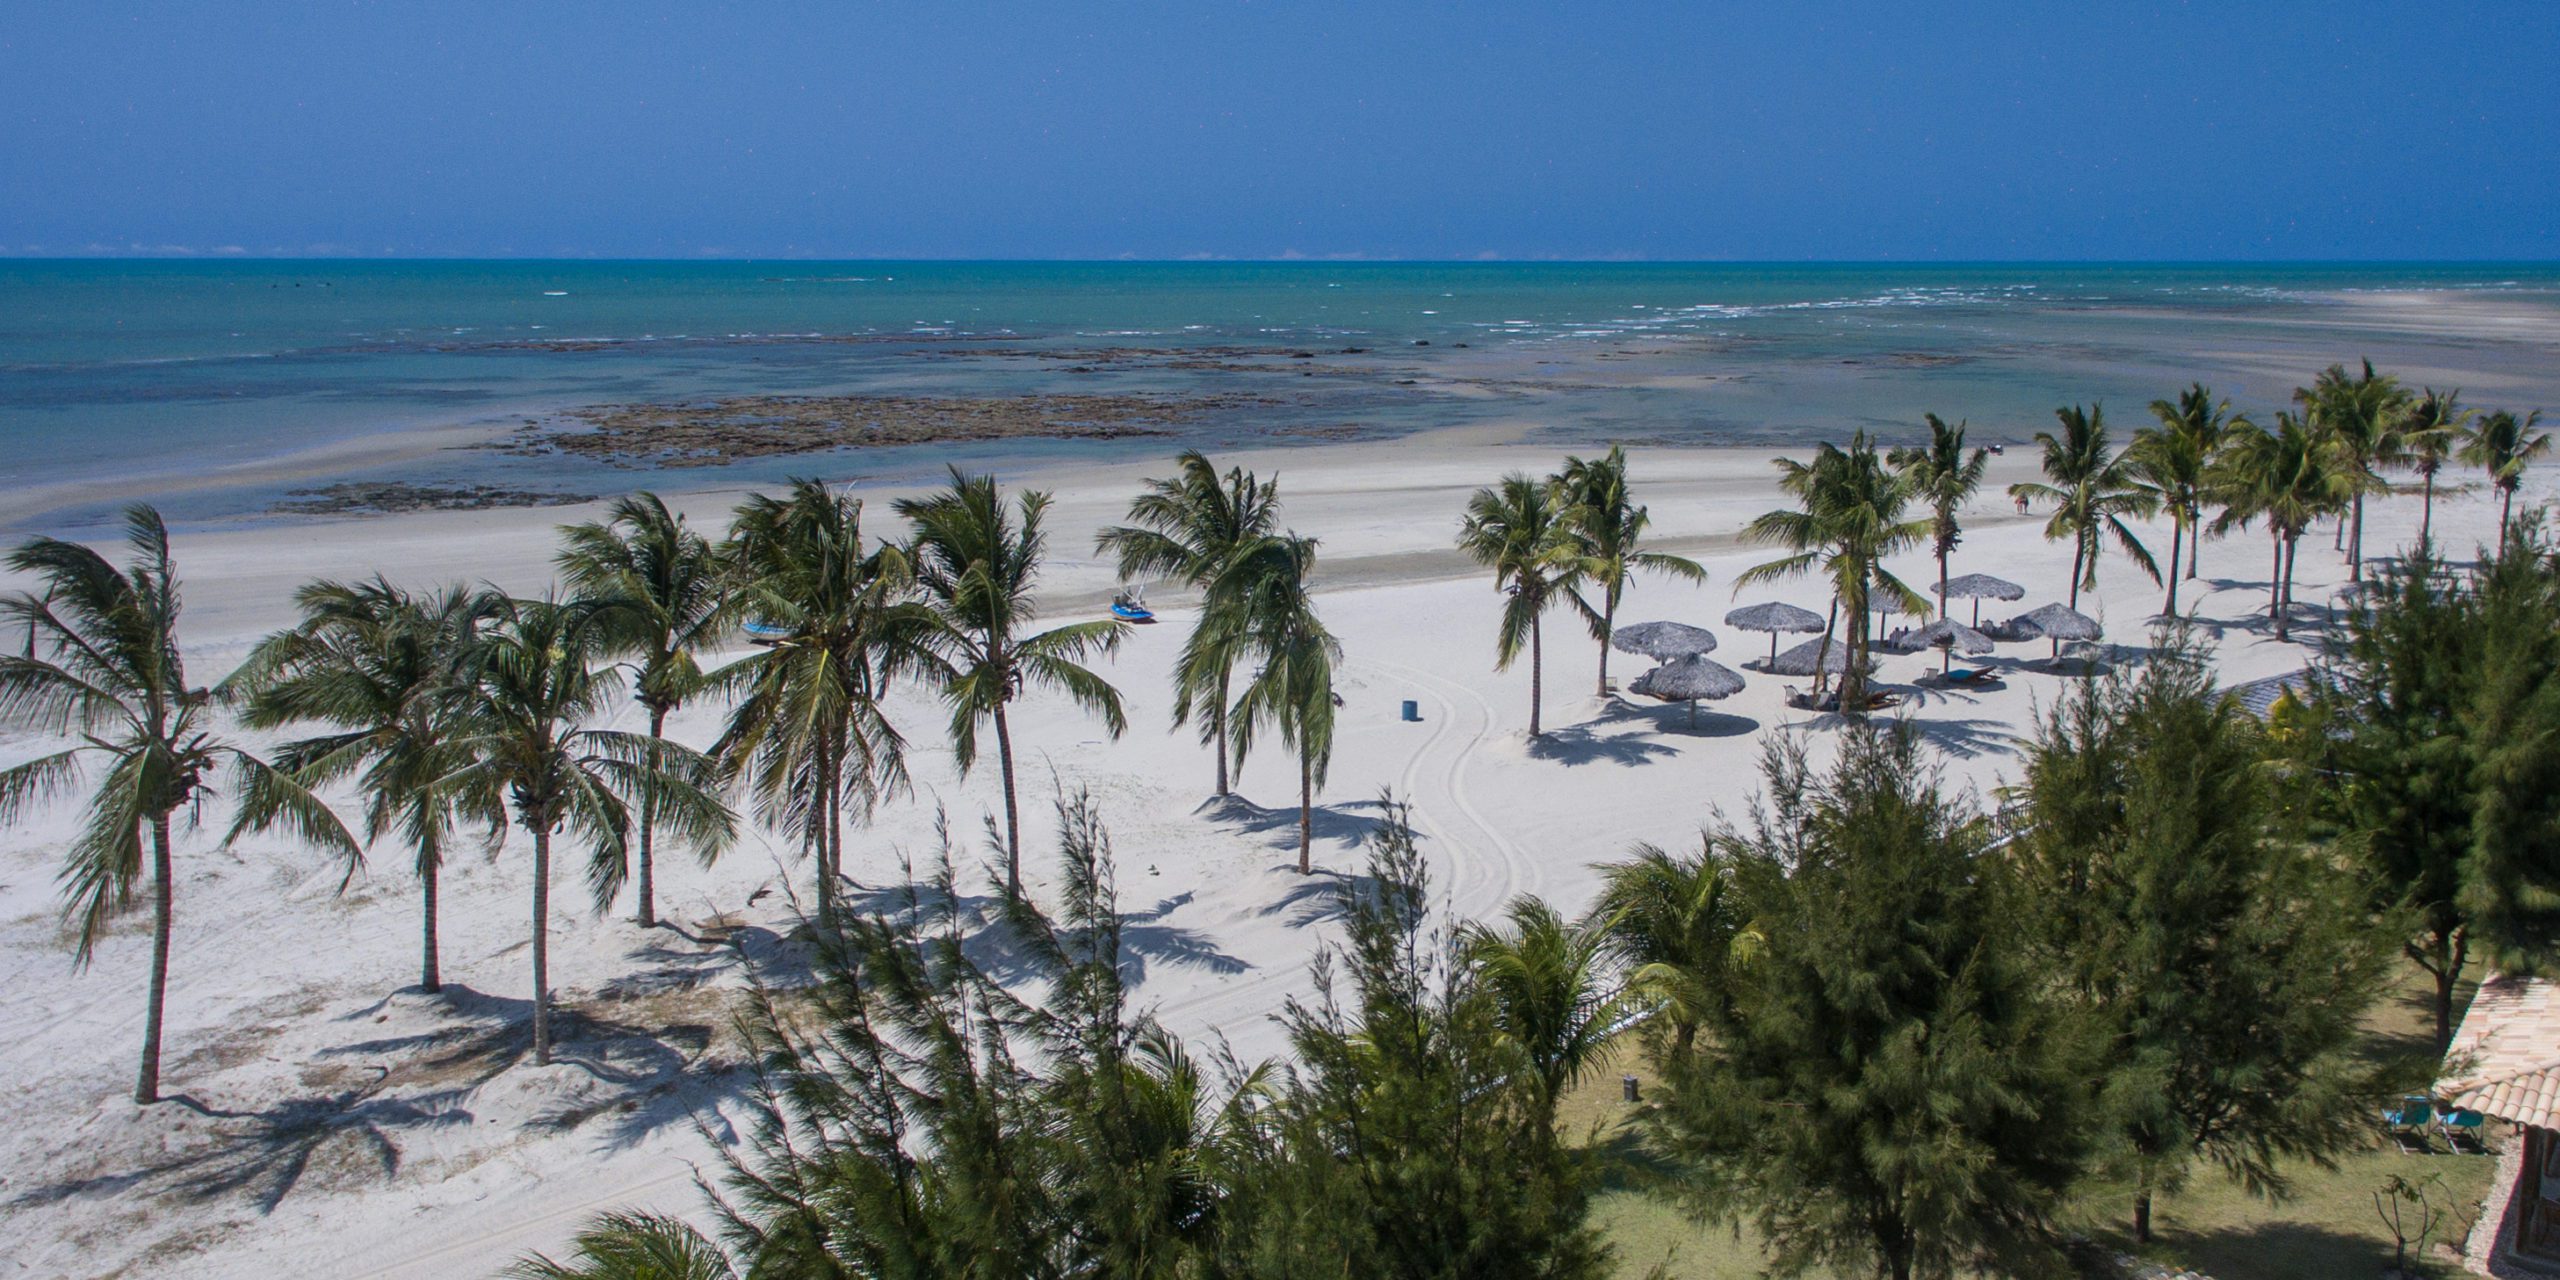 Uma praia de areia brancas e mar calmo, um verdadeiro paraíso em Fortim.